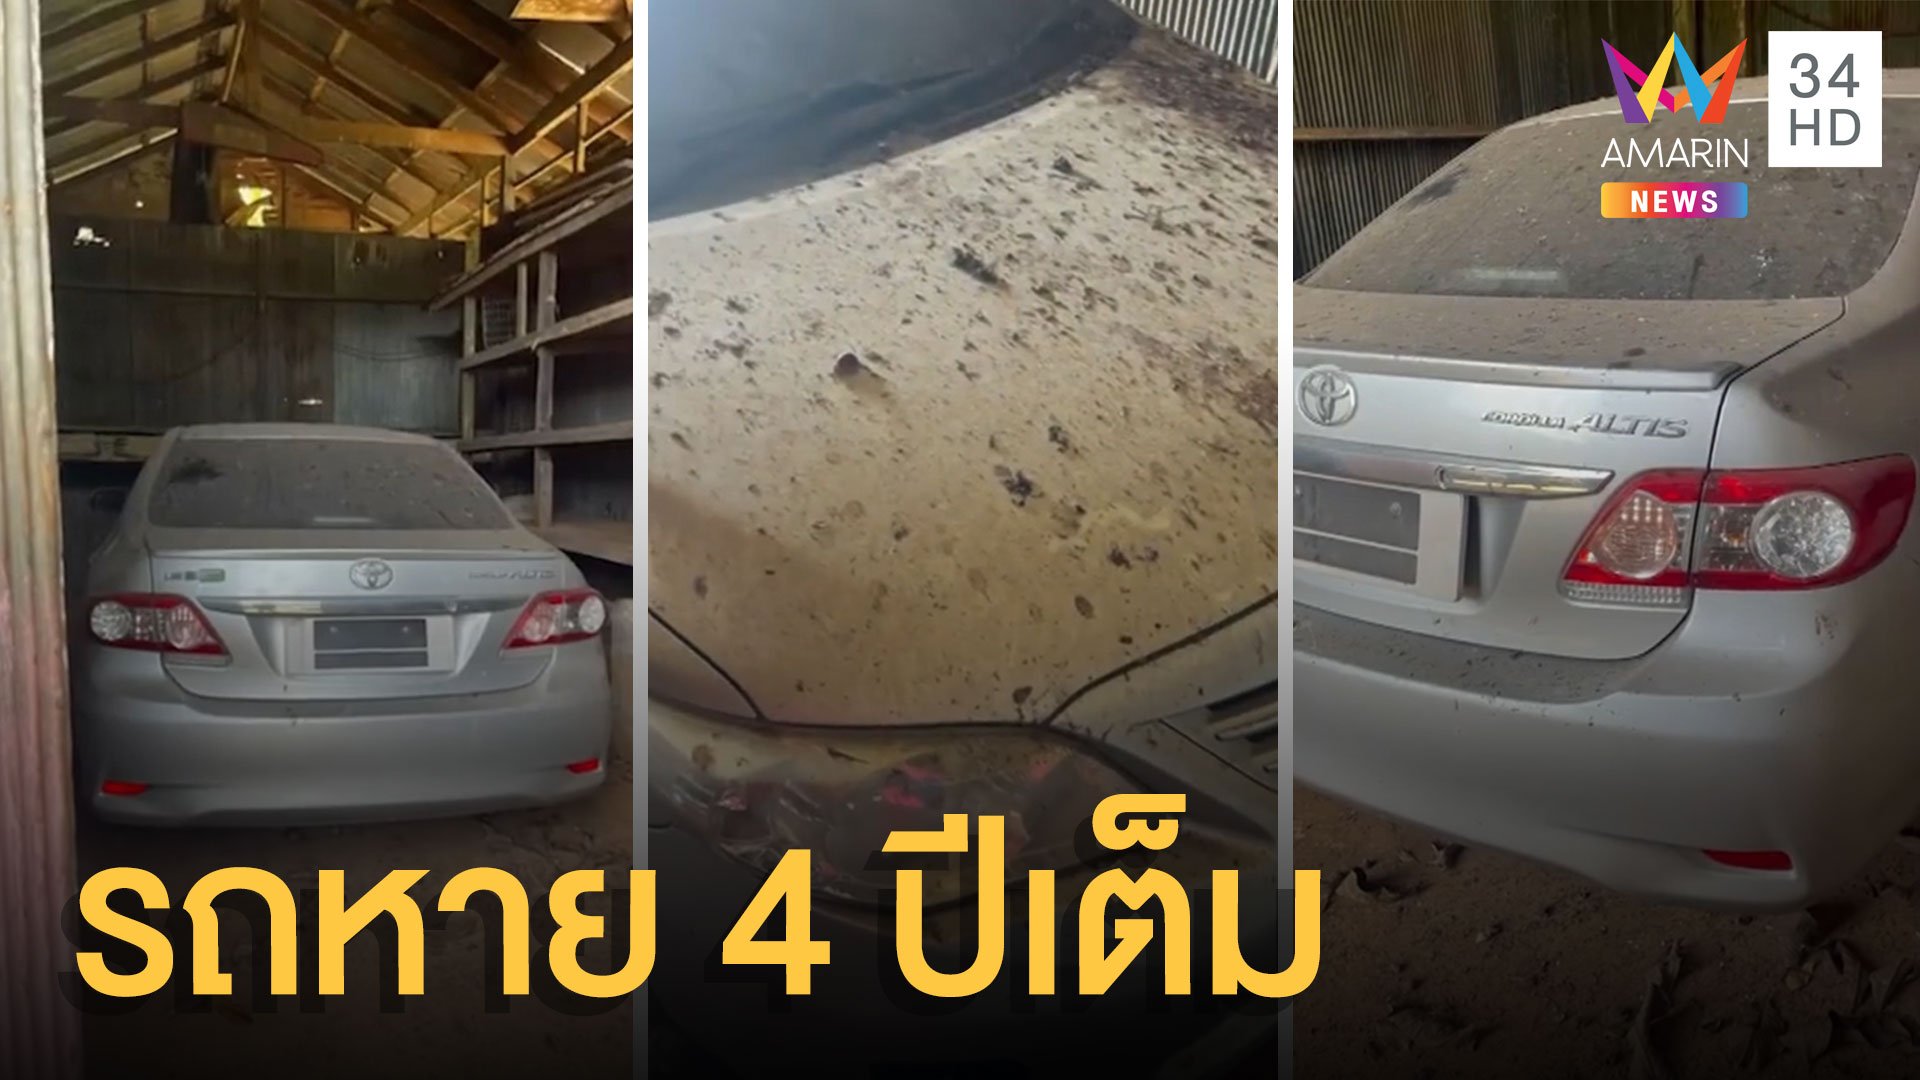 รถยนต์หาย 4 ปีเต็มๆ สุดท้ายตามหาจนเจอ | ข่าวอรุณอมรินทร์ | 5 ต.ค. 64 | AMARIN TVHD34